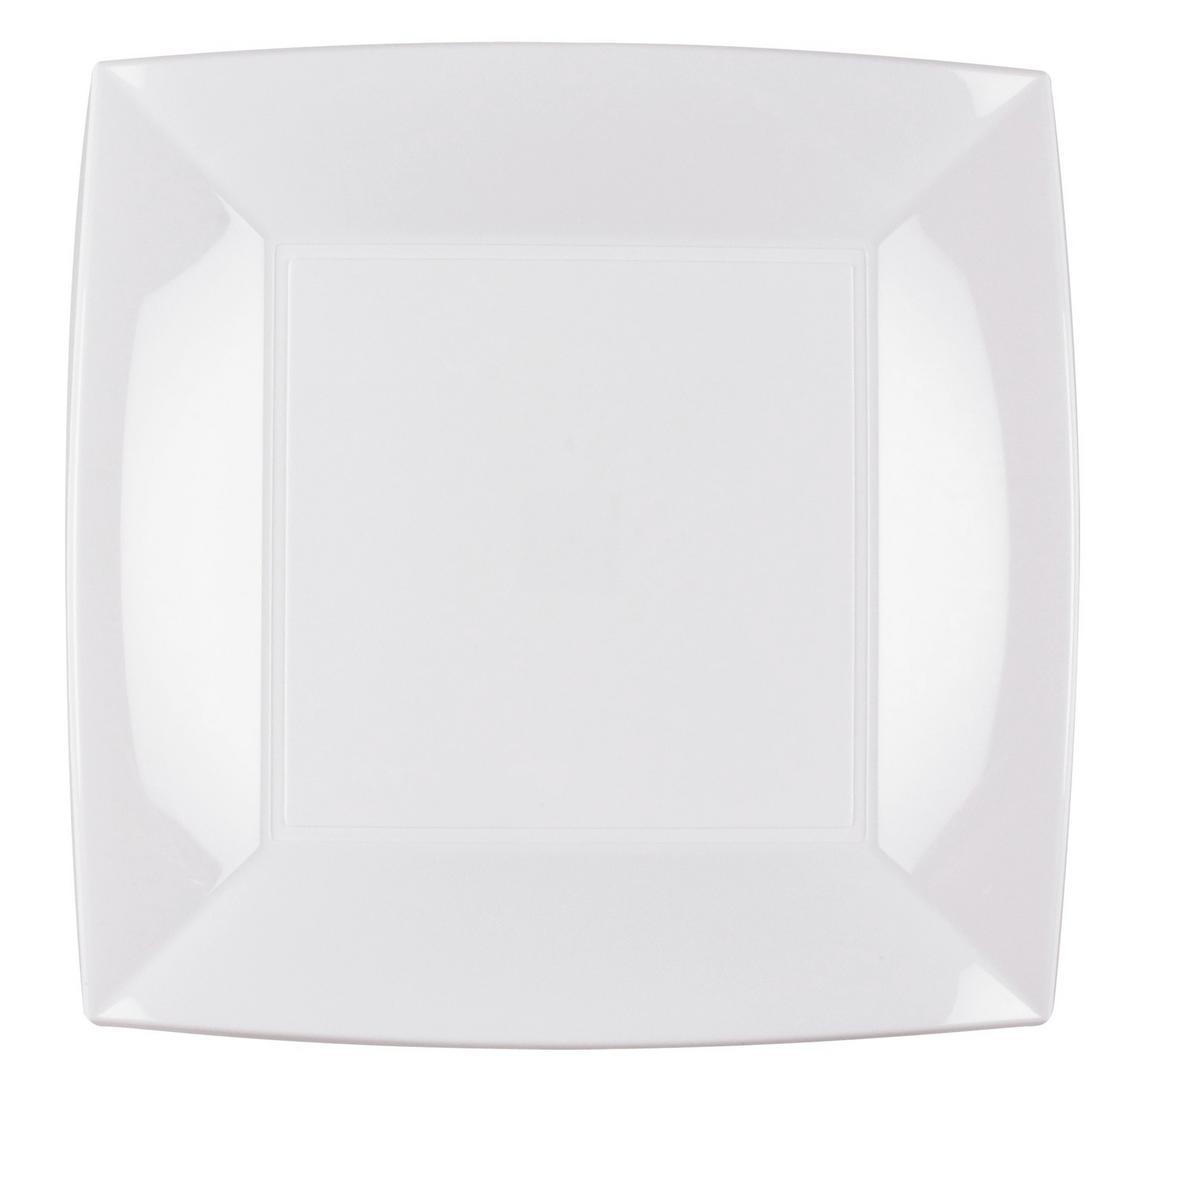 6 assiettes carrées jetables - Polypropylène - 23 x 23 cm - Blanc